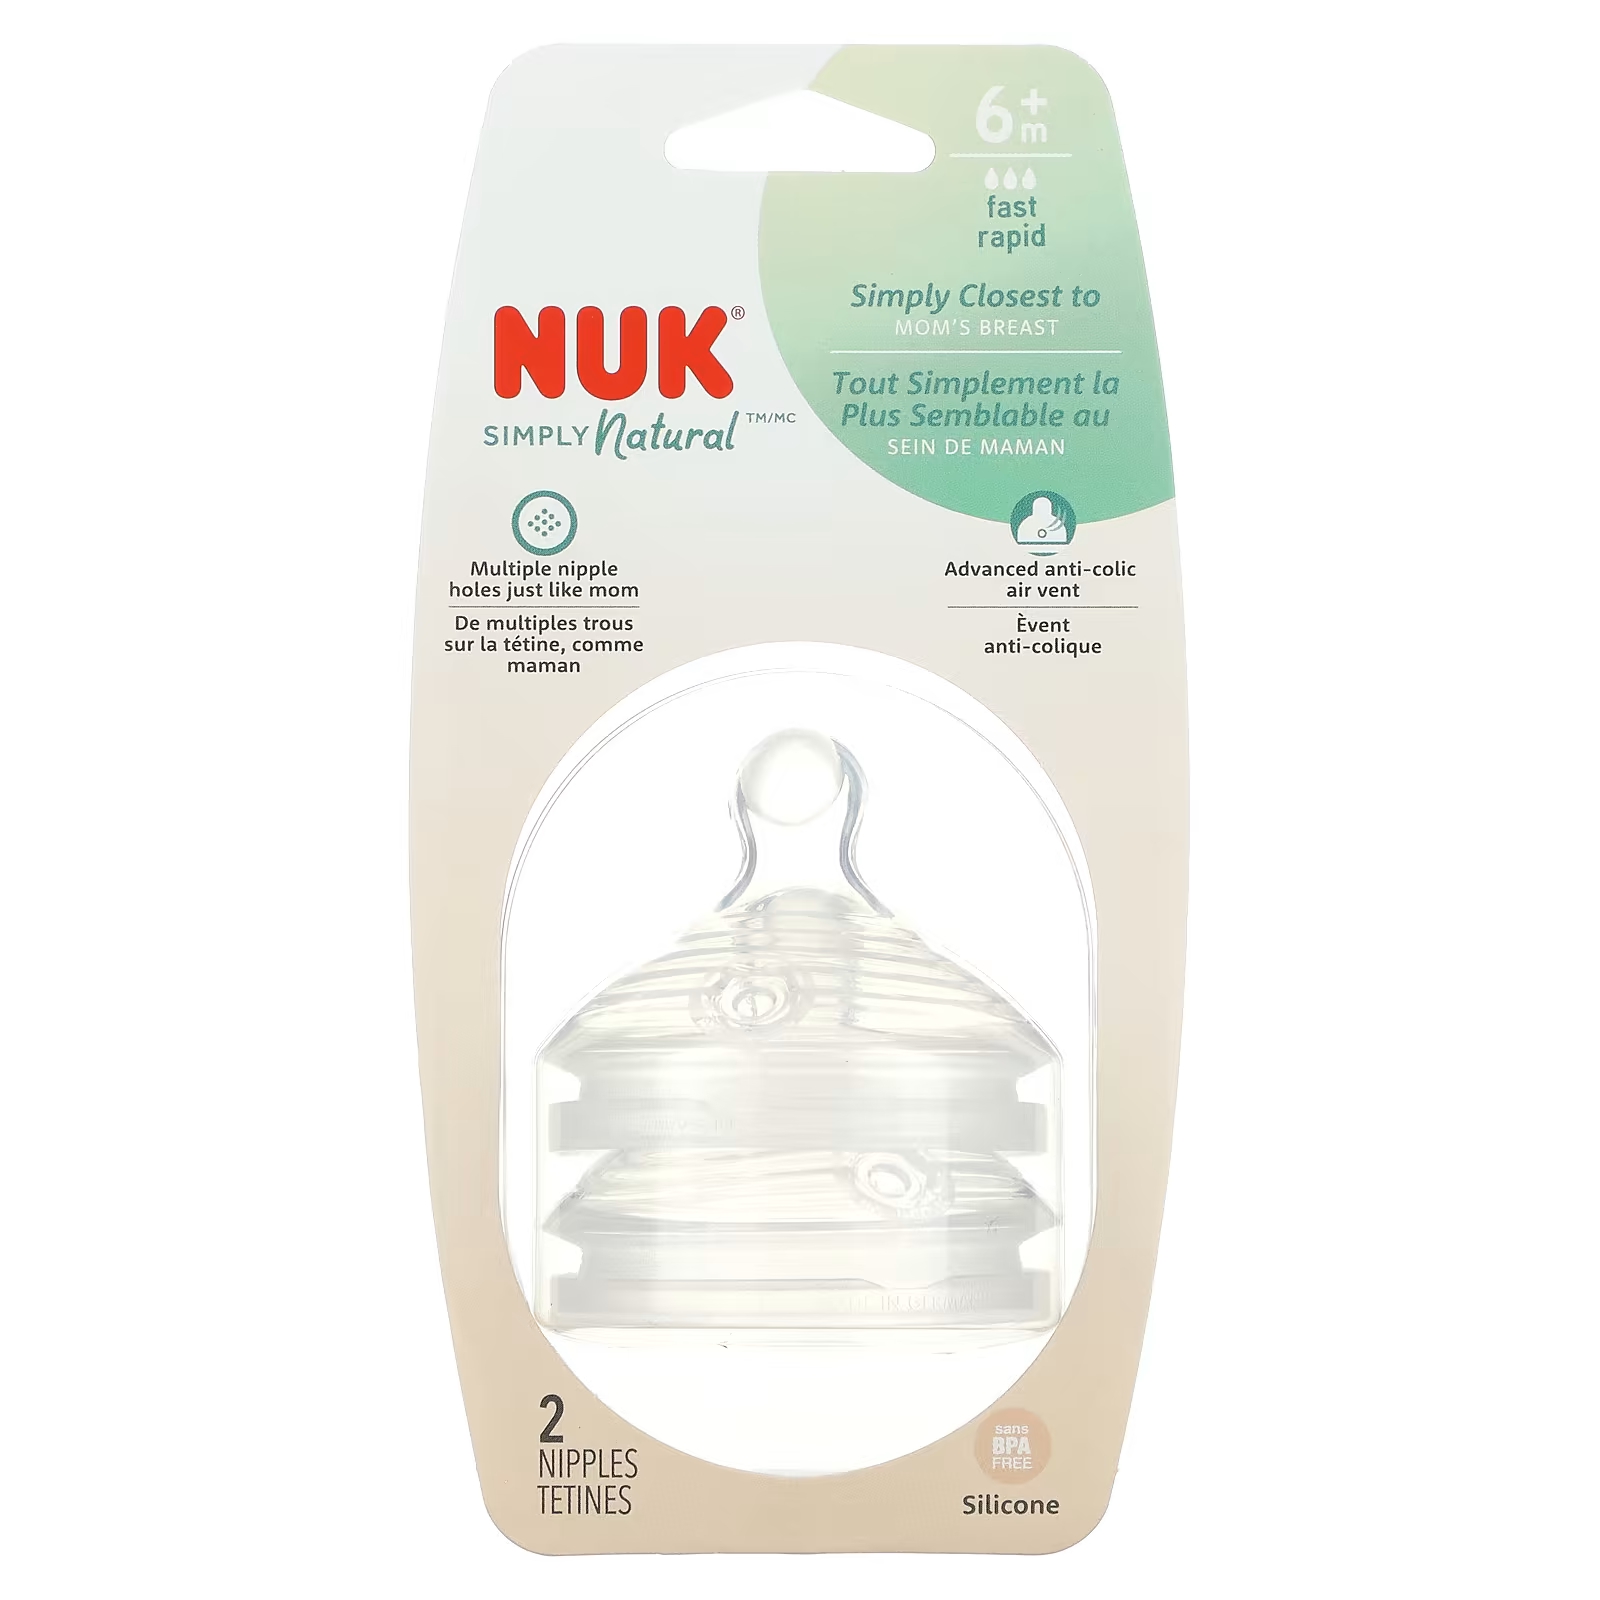 Соски NUK Simply Natural от 6 месяцев nuk simply natural бутылочки от 0 месяцев медленно 2 упаковки по 150 мл 5 унций каждая